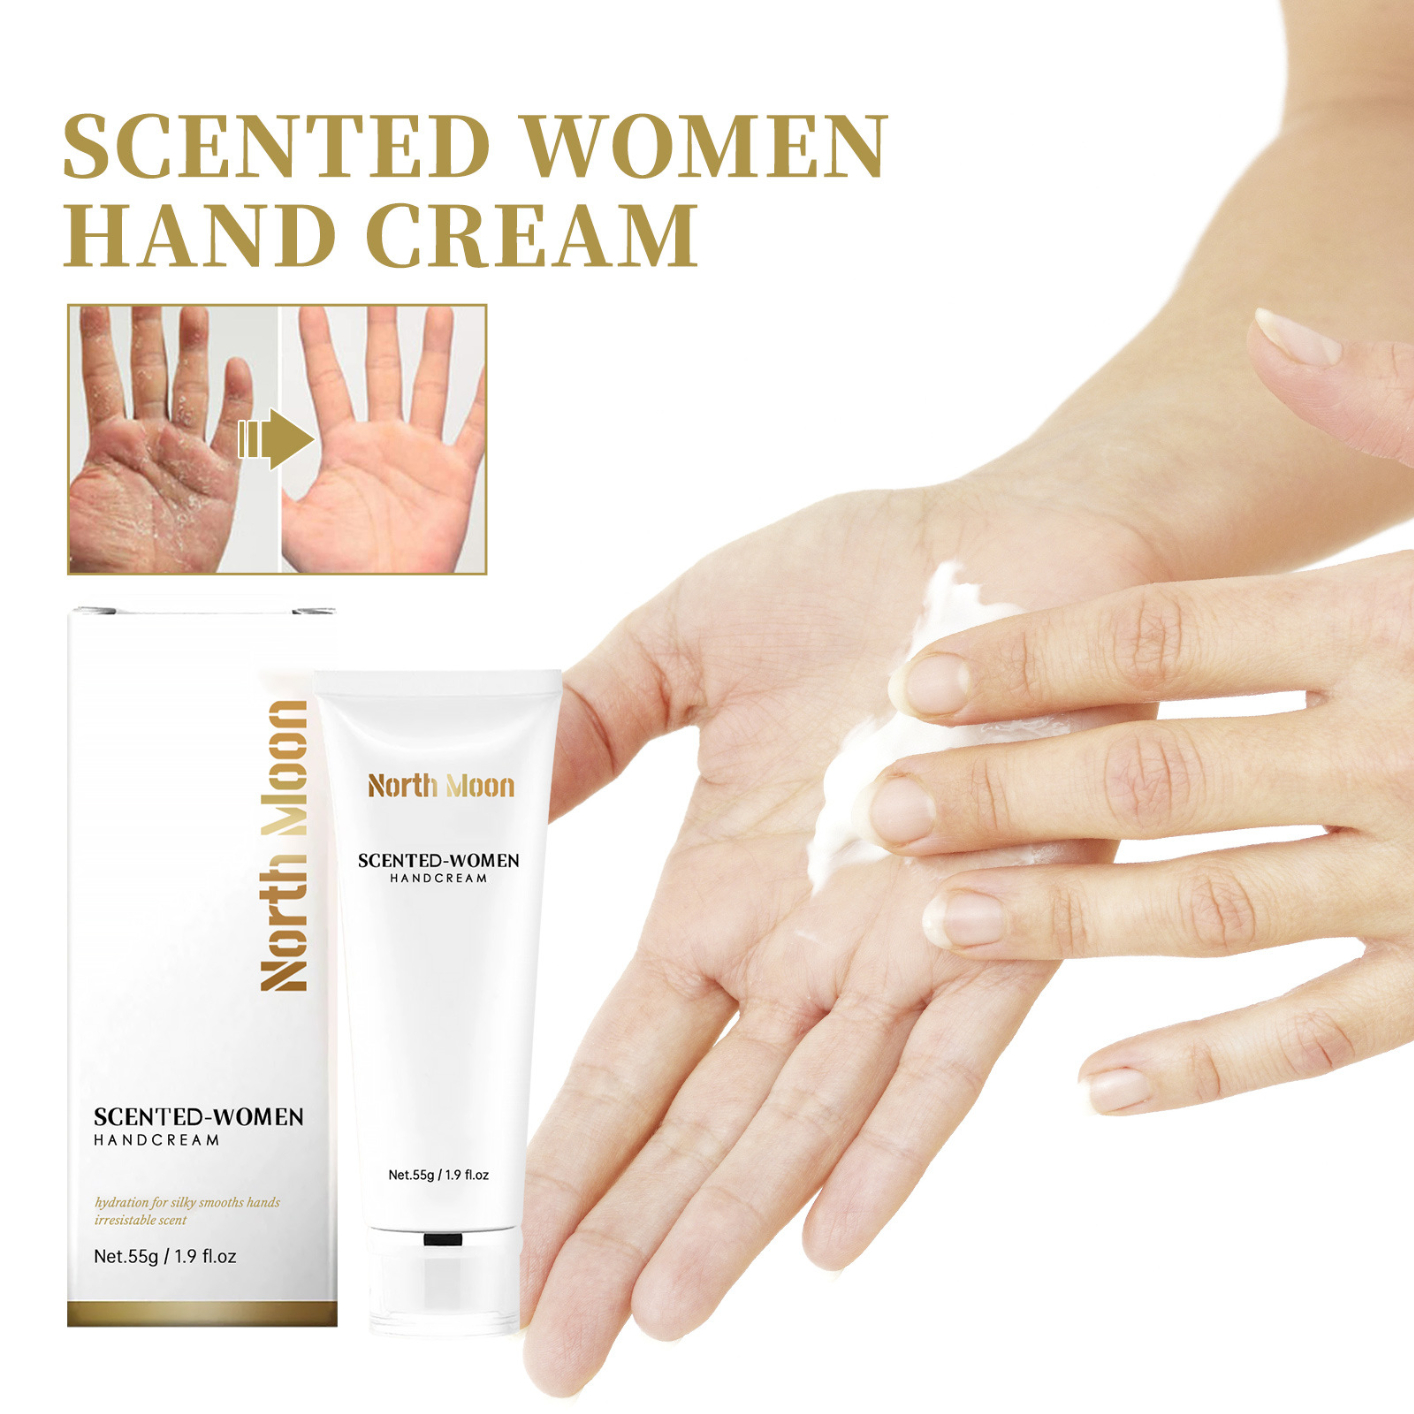 North Moon Pheromones Hand Cream - Aromatherapy Feminine Hand Cream for Tender Skin, Moisturizing & Repairing Dry and Cracked Hands